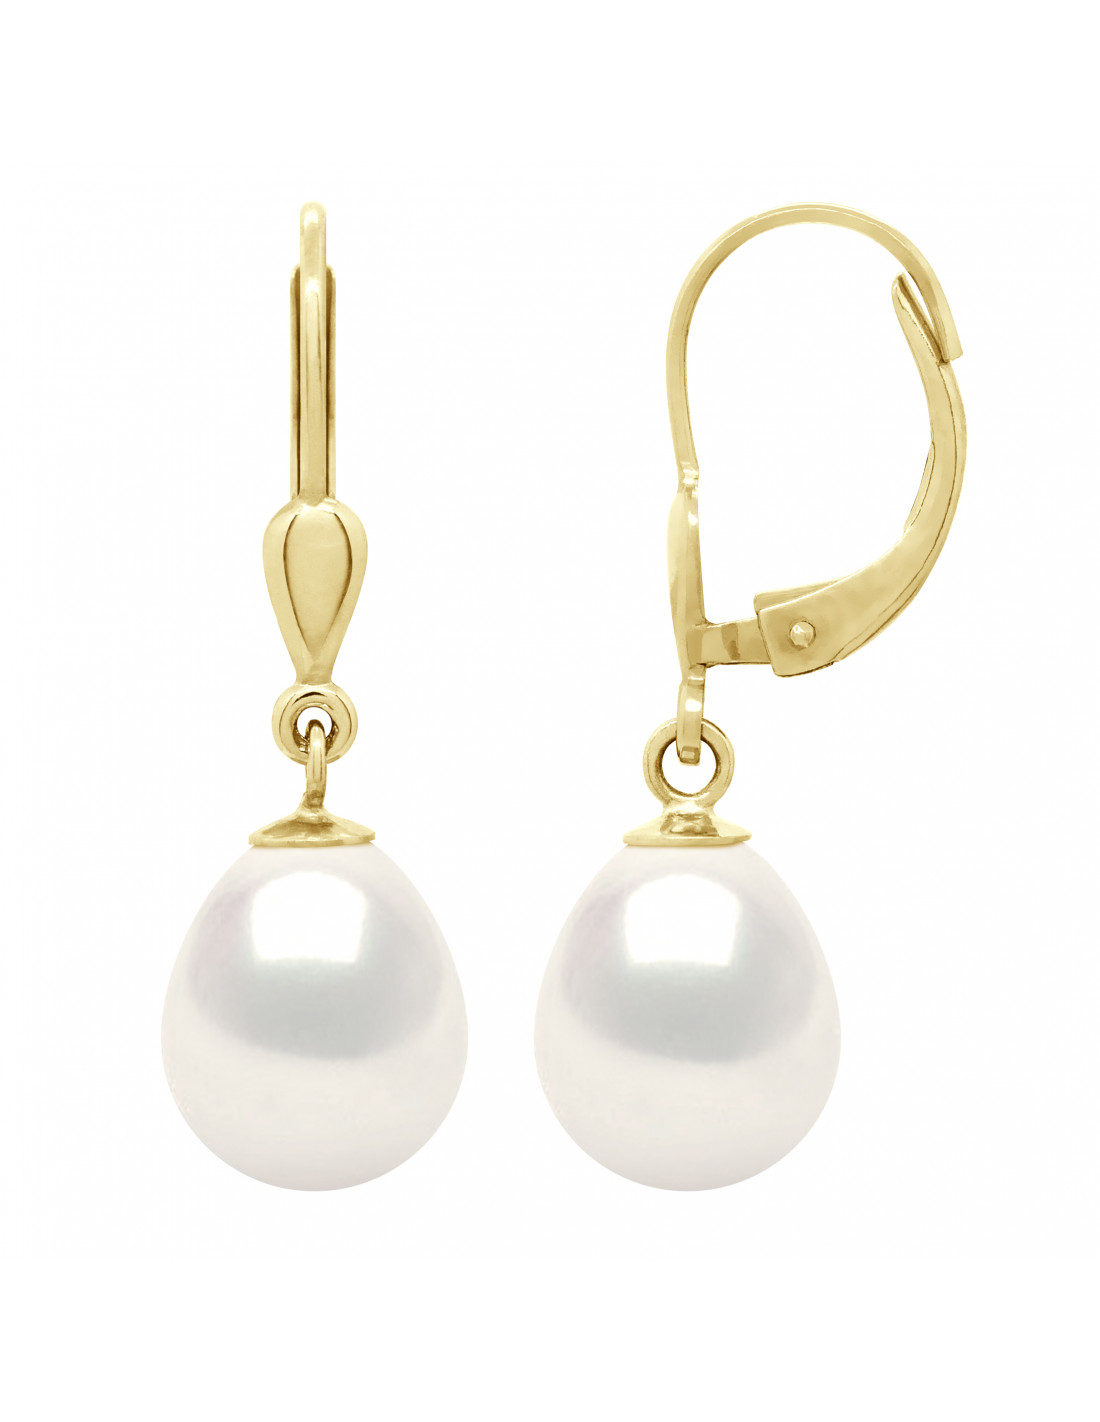 Boucles d'Oreilles Pendantes Joaillerie Perles 9-10 mm - Argent 925 -  BONNEGRACE